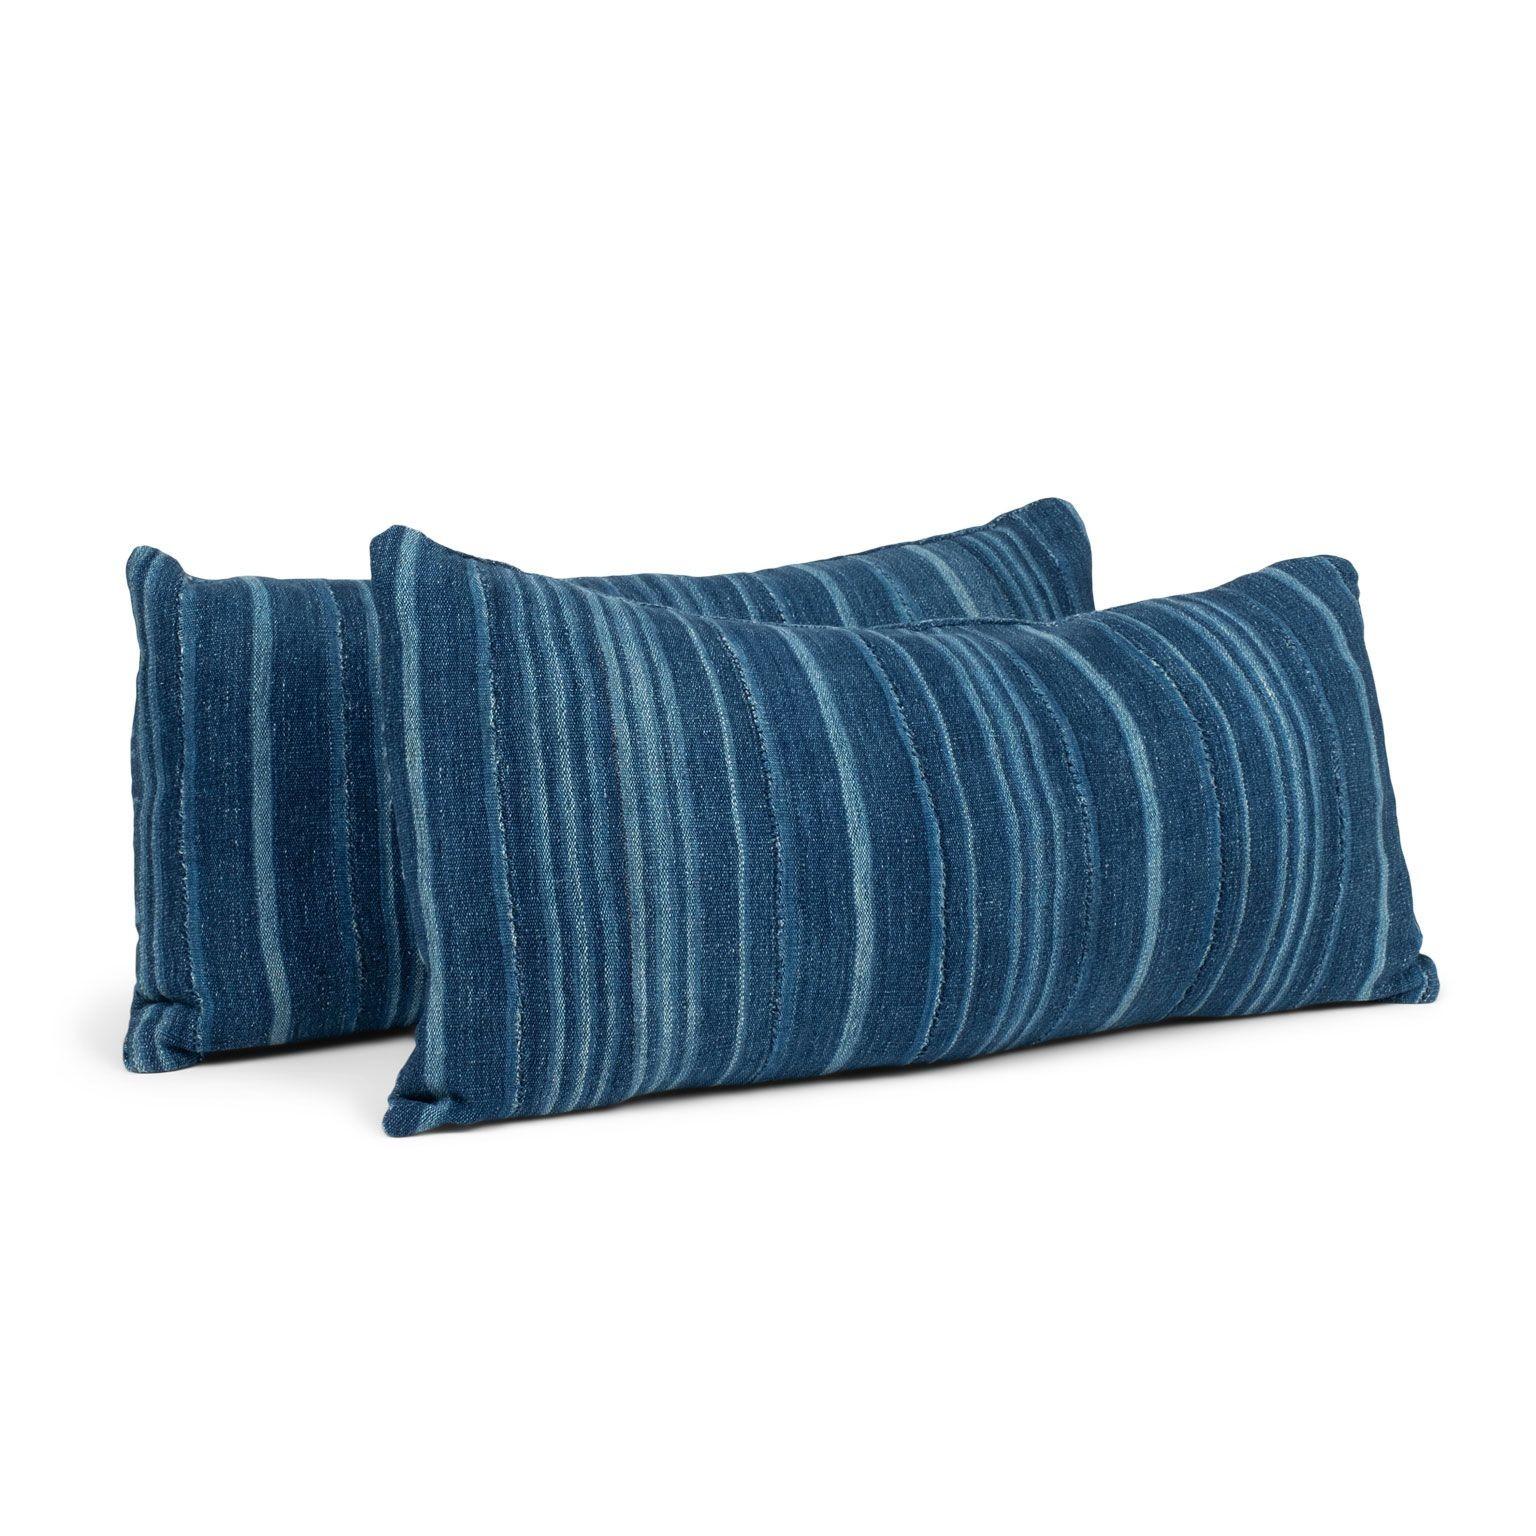 Contemporary Large Faded Indigo Tone-on-Tone Striped Lumbar Cushion For Sale